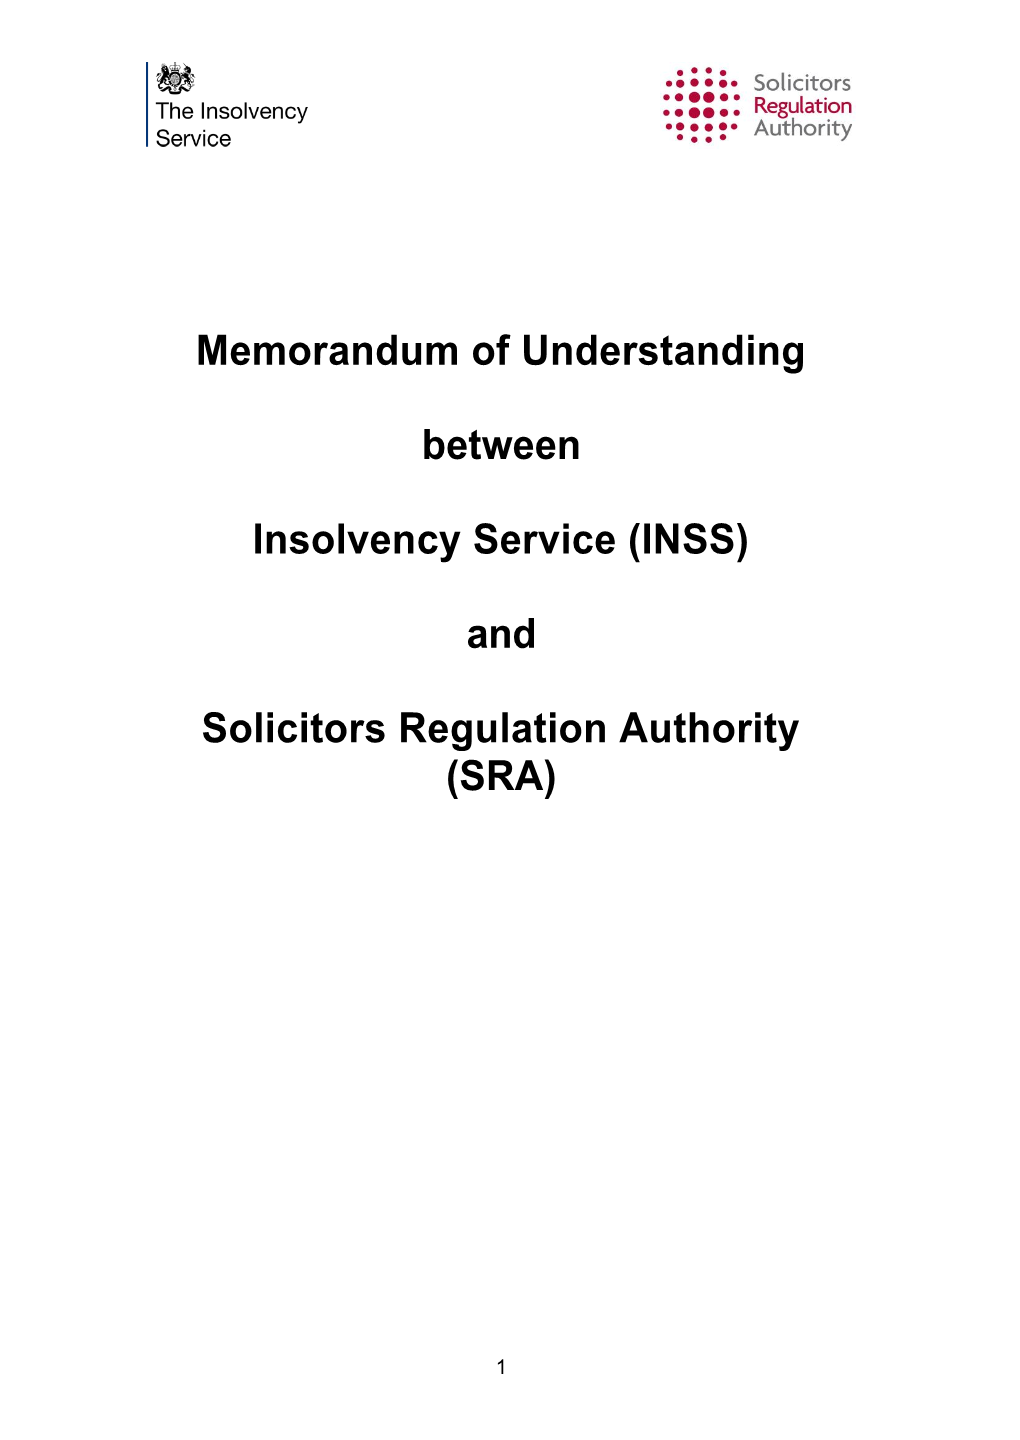 Memorandum of Understanding Between Insolvency Service (INSS